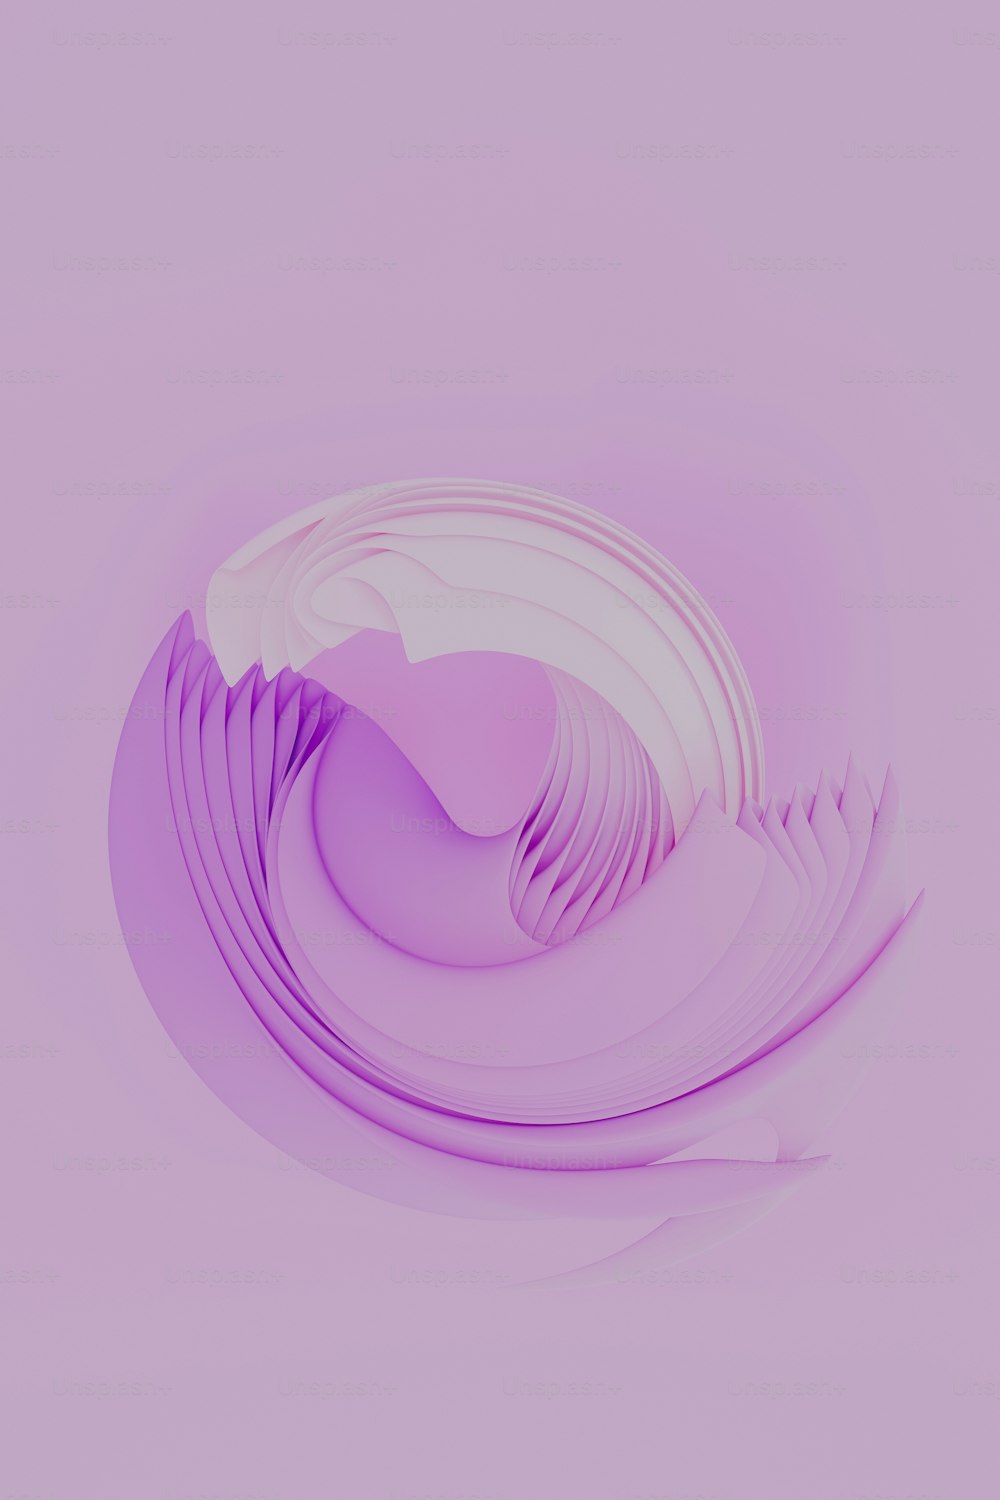 une plaque blanche avec un motif violet dessus